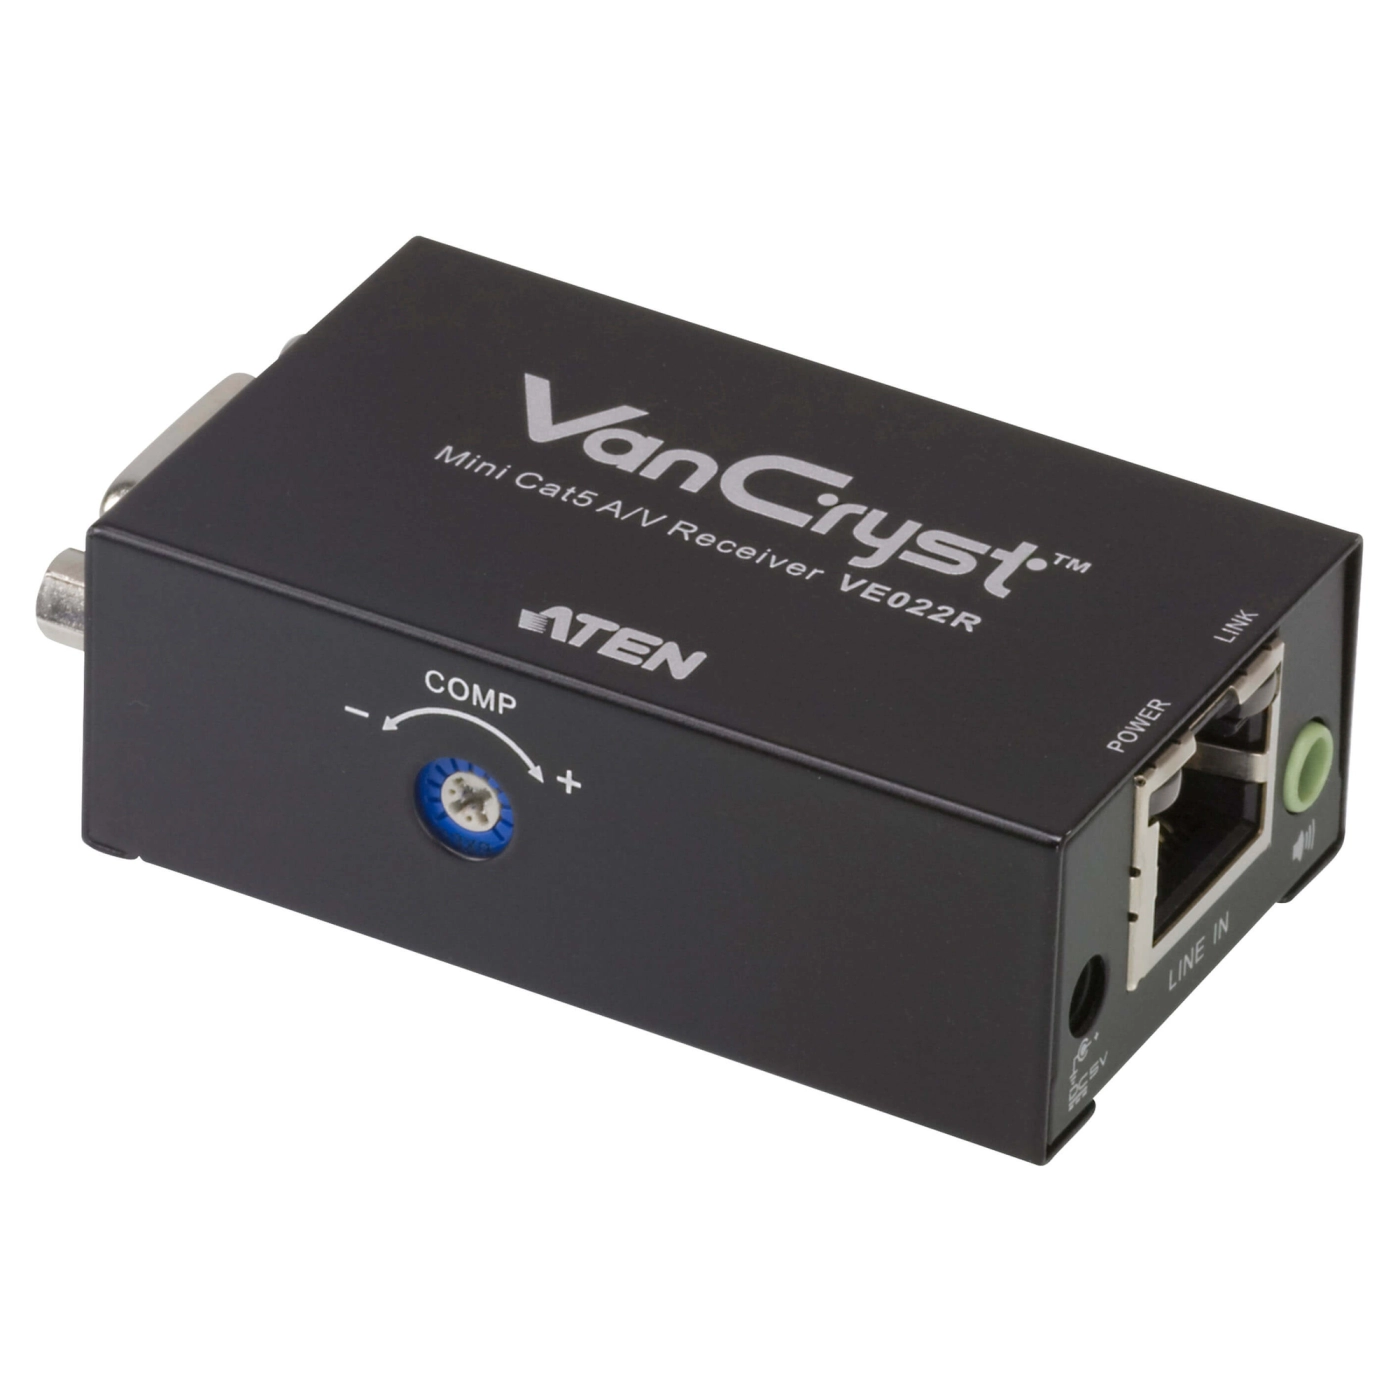 Купить Видео-удлинитель ATEN VE022 по кабелю Cat 5 USB/VGA (VE022-AT-G) - фото 1